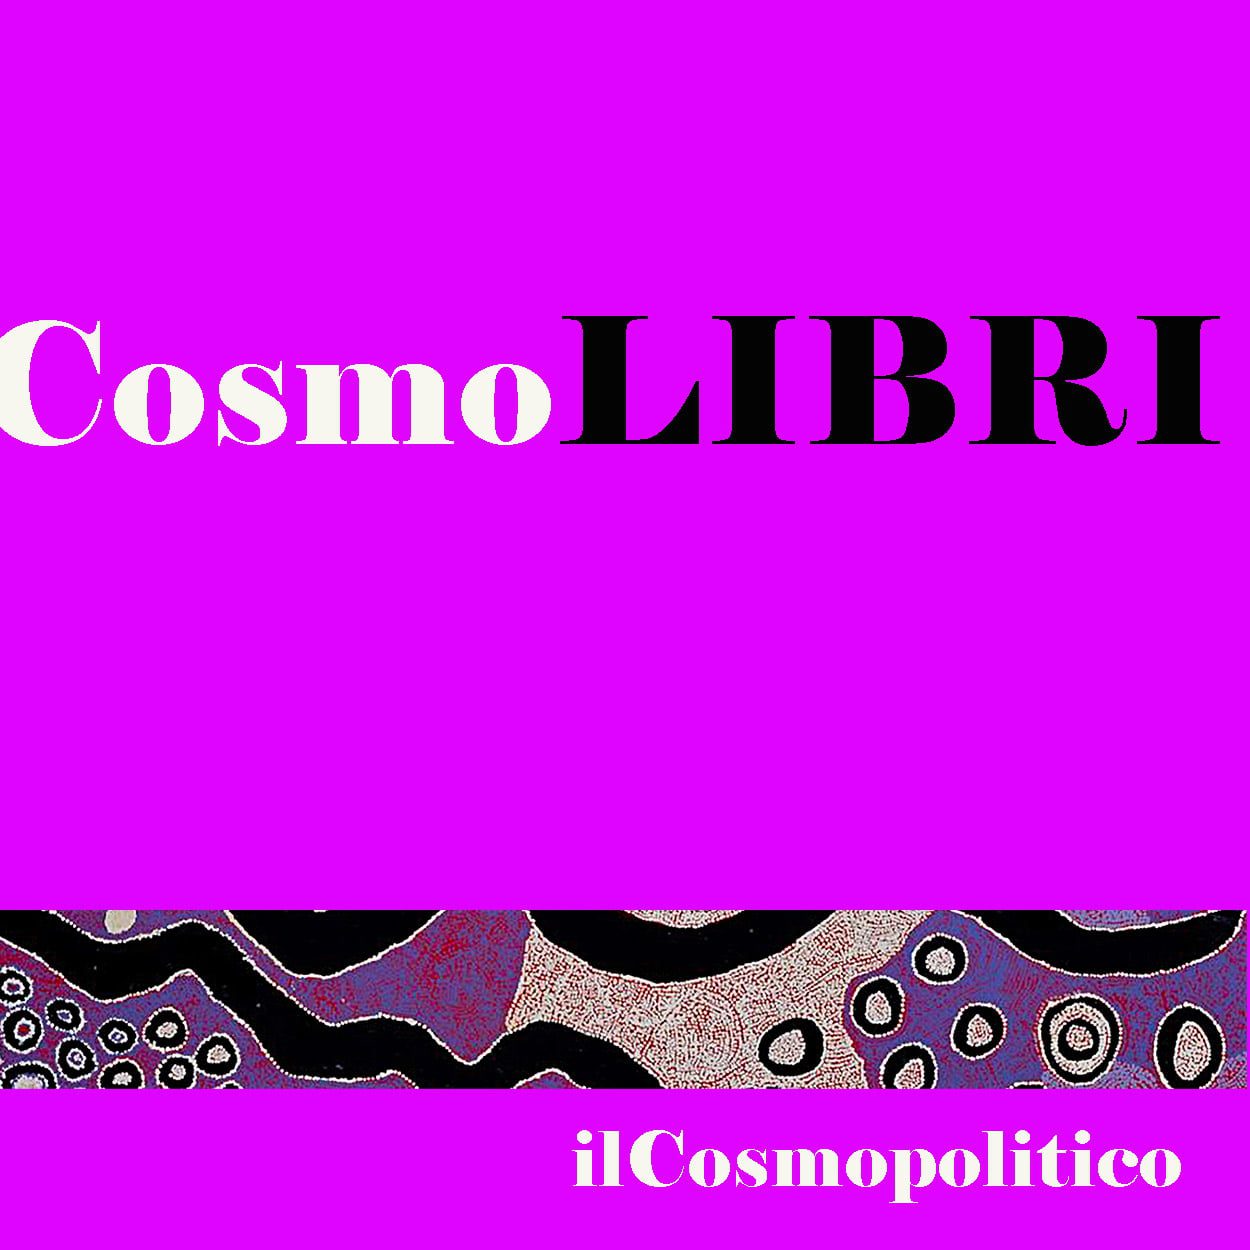 CosmoLIBRI-ilCosmopolitico-spazio-dedicato-autori-libri-politica-internazionale-geopolitica